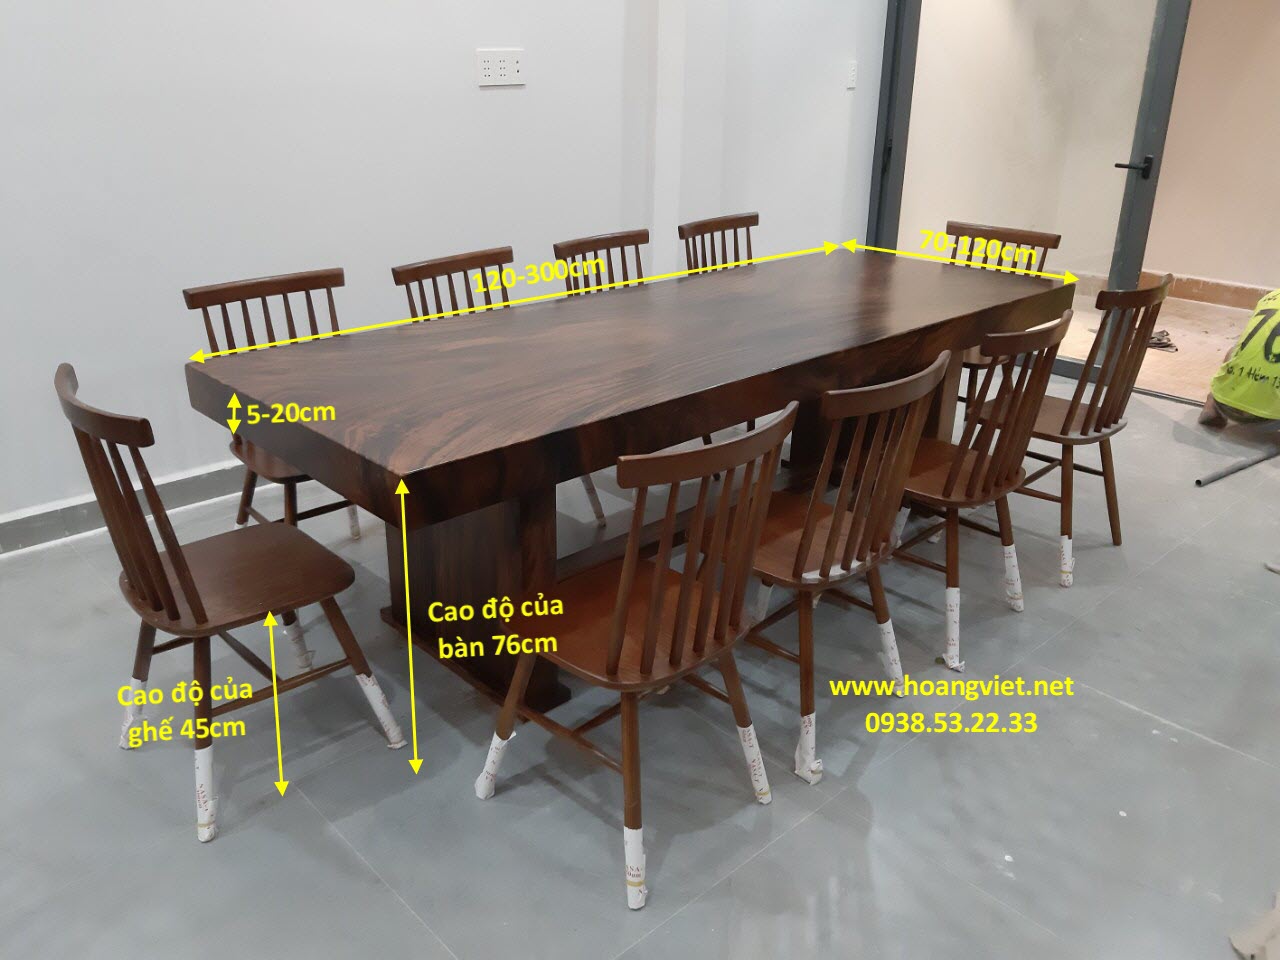 Kích thước bàn ghế gỗ không chỉ ảnh hưởng đến việc sắp xếp nội thất mà còn quyết định đến độ thoải mái khi sử dụng. Hãy cùng xem hình ảnh liên quan để được tư vấn chi tiết và chọn lựa sản phẩm phù hợp nhất cho gia đình bạn.